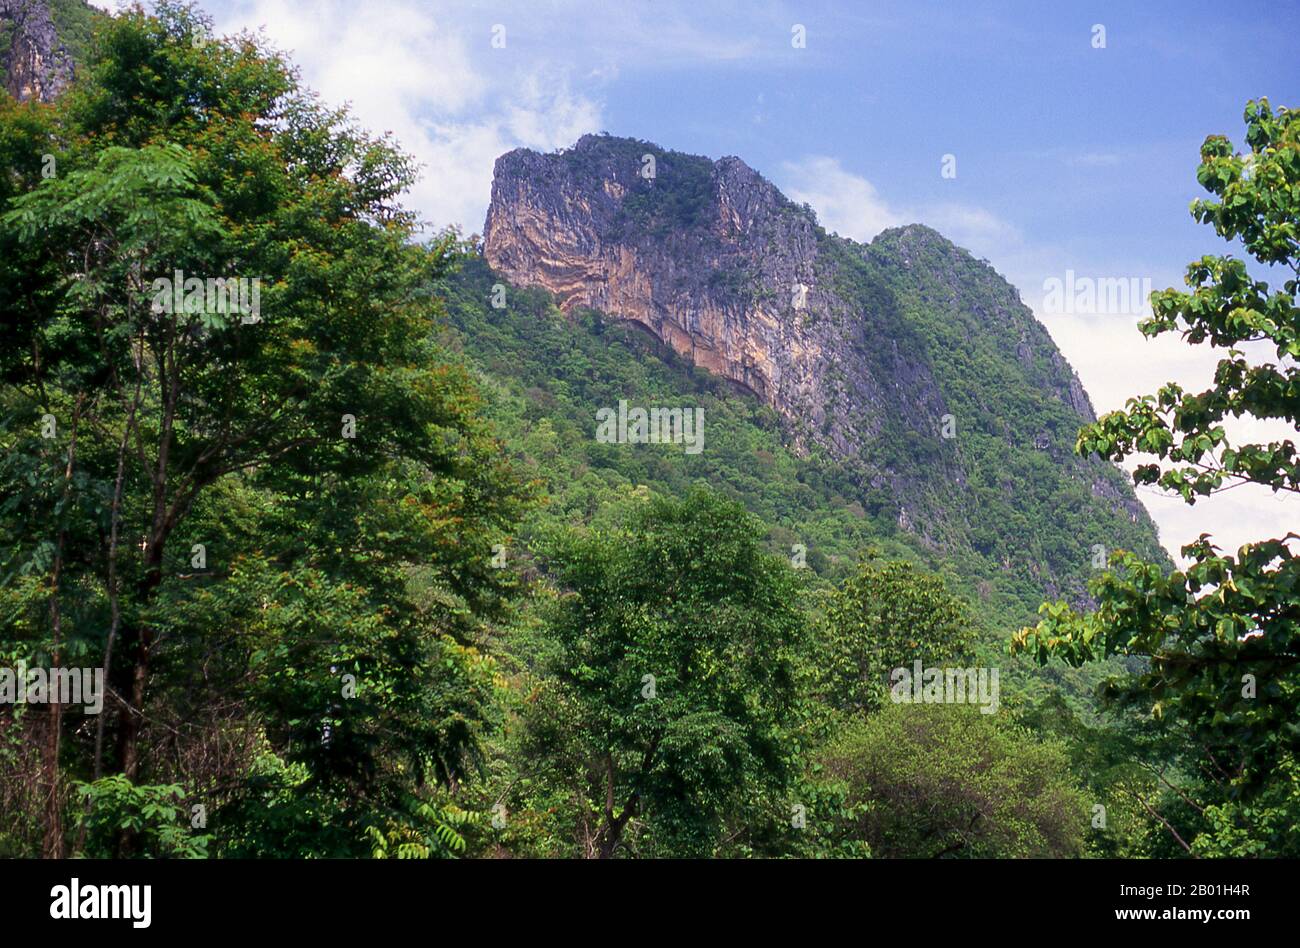 Thailand: Felsvorsprung im Nationalpark Phu Kradung, Provinz Loei. Die Provinz Loei (Thai: เลย) befindet sich im oberen Nordosten Thailands. Die benachbarten Provinzen sind (von Osten nach rechts) Nong Khai, Udon Thani, Nongbua Lamphu, Khon Kaen, Phetchabun, Phitsanulok. Im Norden grenzt sie an die Provinzen Xaignabouli und Vientiane in Laos. Die Provinz ist von niedrigen Bergen bedeckt, während die Hauptstadt Loei in einem fruchtbaren Becken liegt. Der Fluss Loei, der durch die Provinz fließt, ist ein Nebenfluss des Mekong, der zusammen mit dem kleineren Fluss Hueang die nördliche Grenze der Provinz bildet. Stockfoto